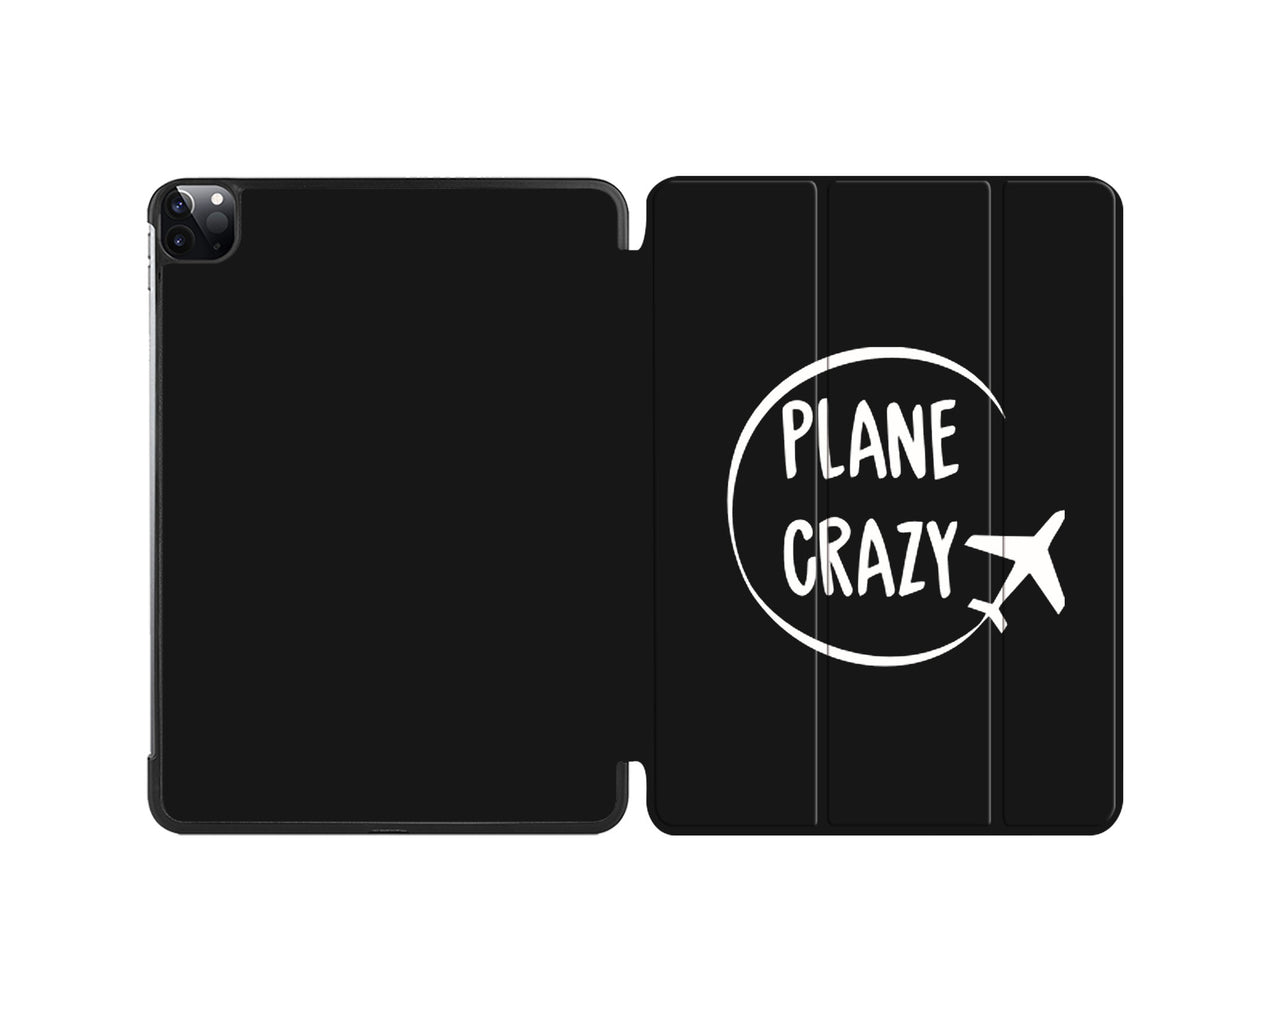 Plane Crazy Designed iPad Cases